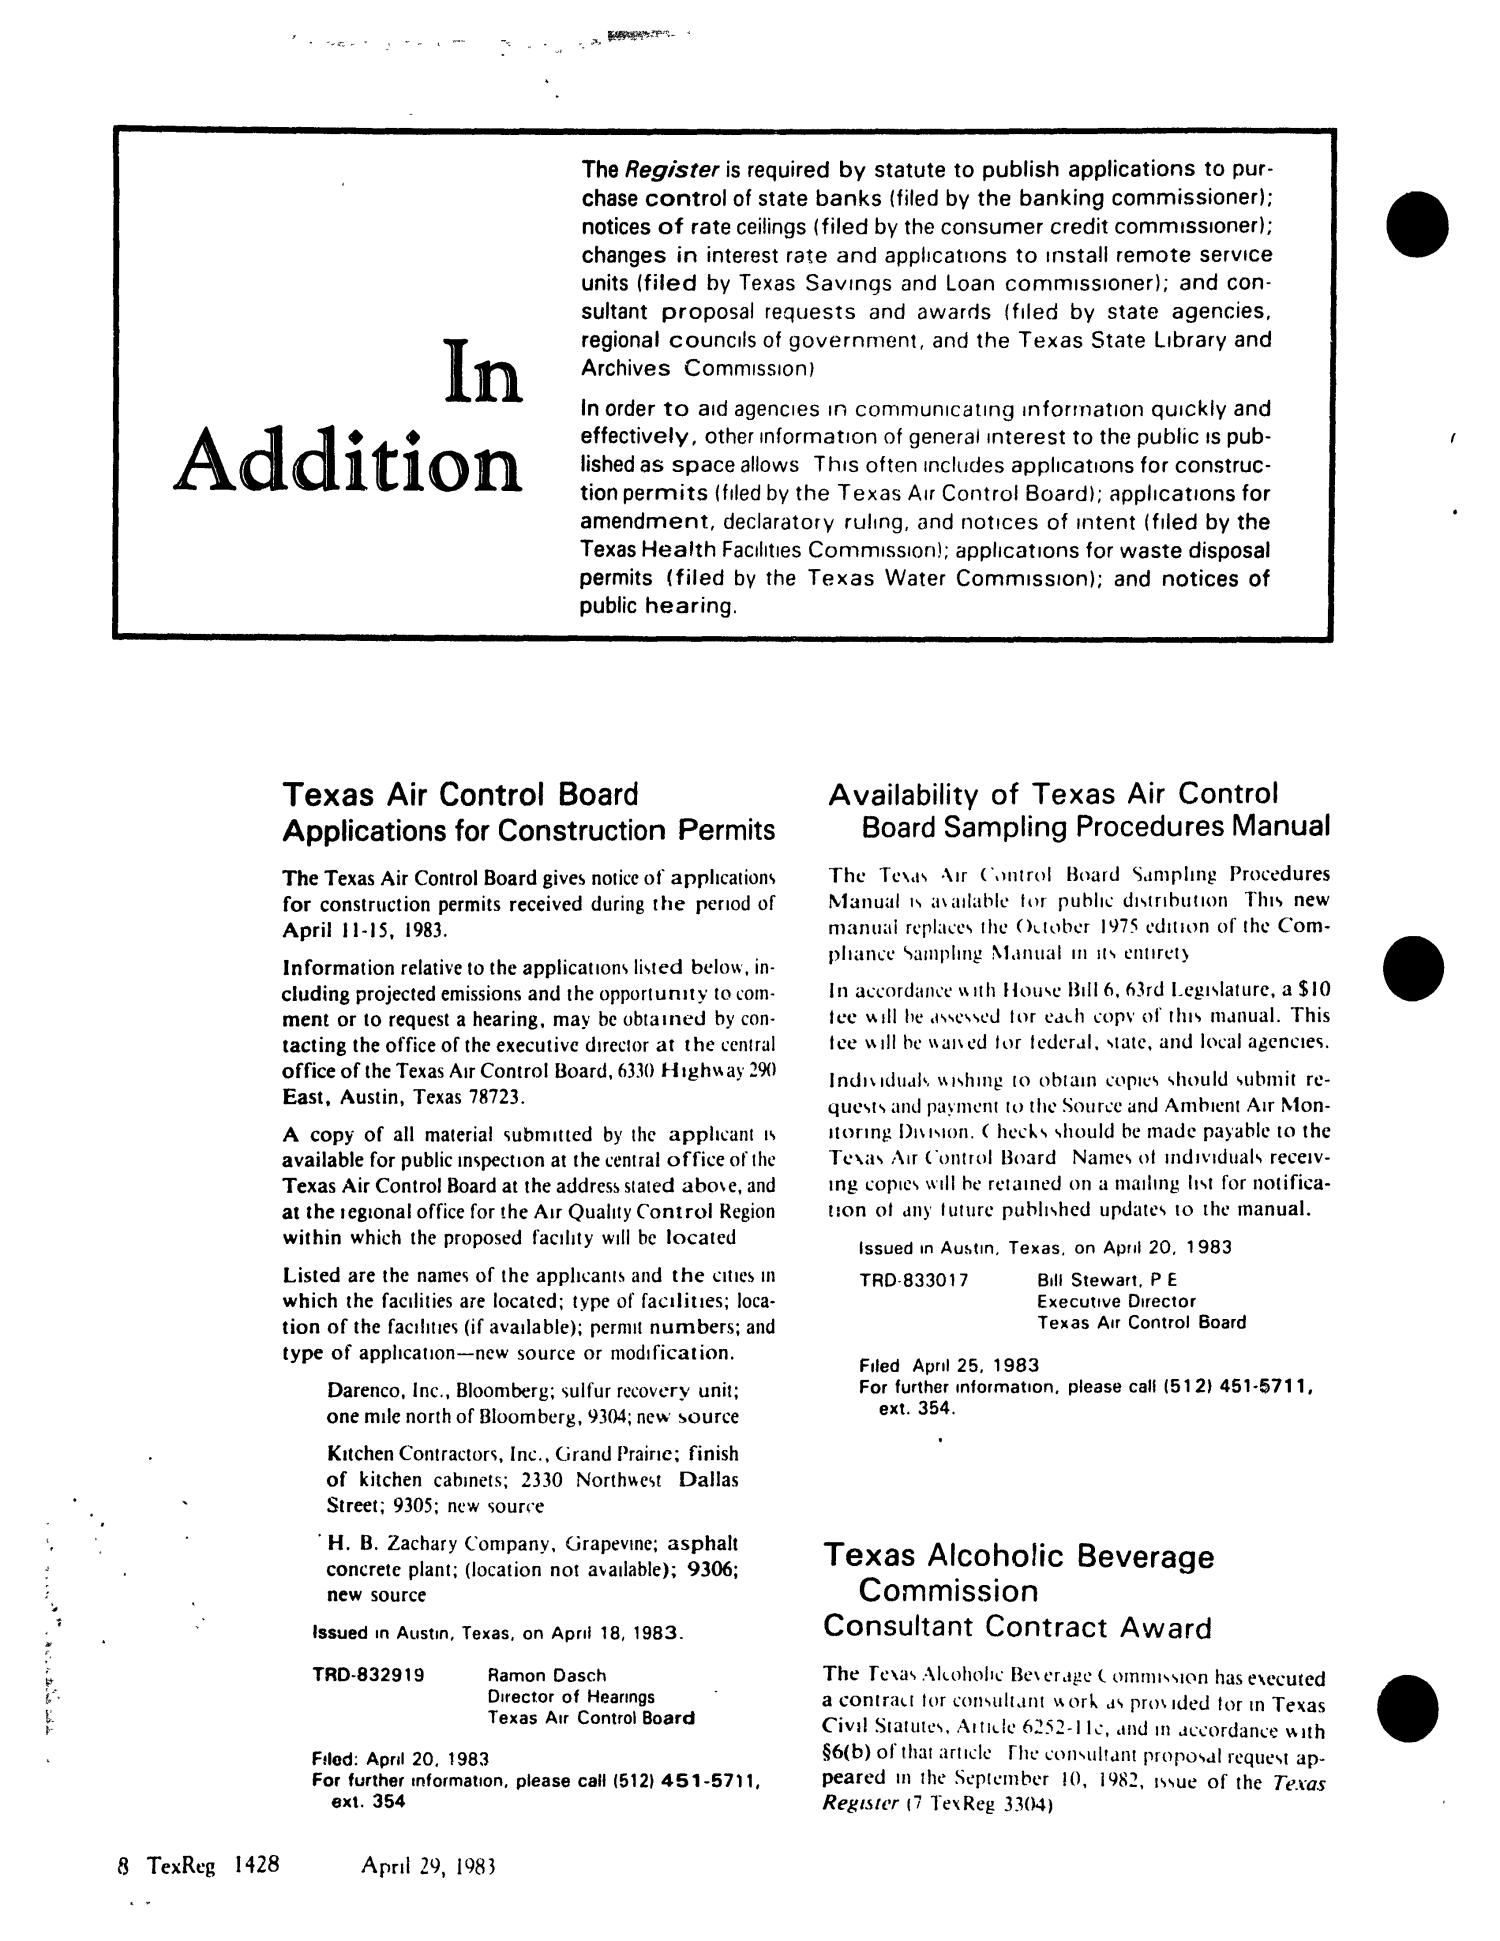 Texas Register, Volume 8, Number 30, Pages 1363-1438, April 29, 1983
                                                
                                                    1428
                                                